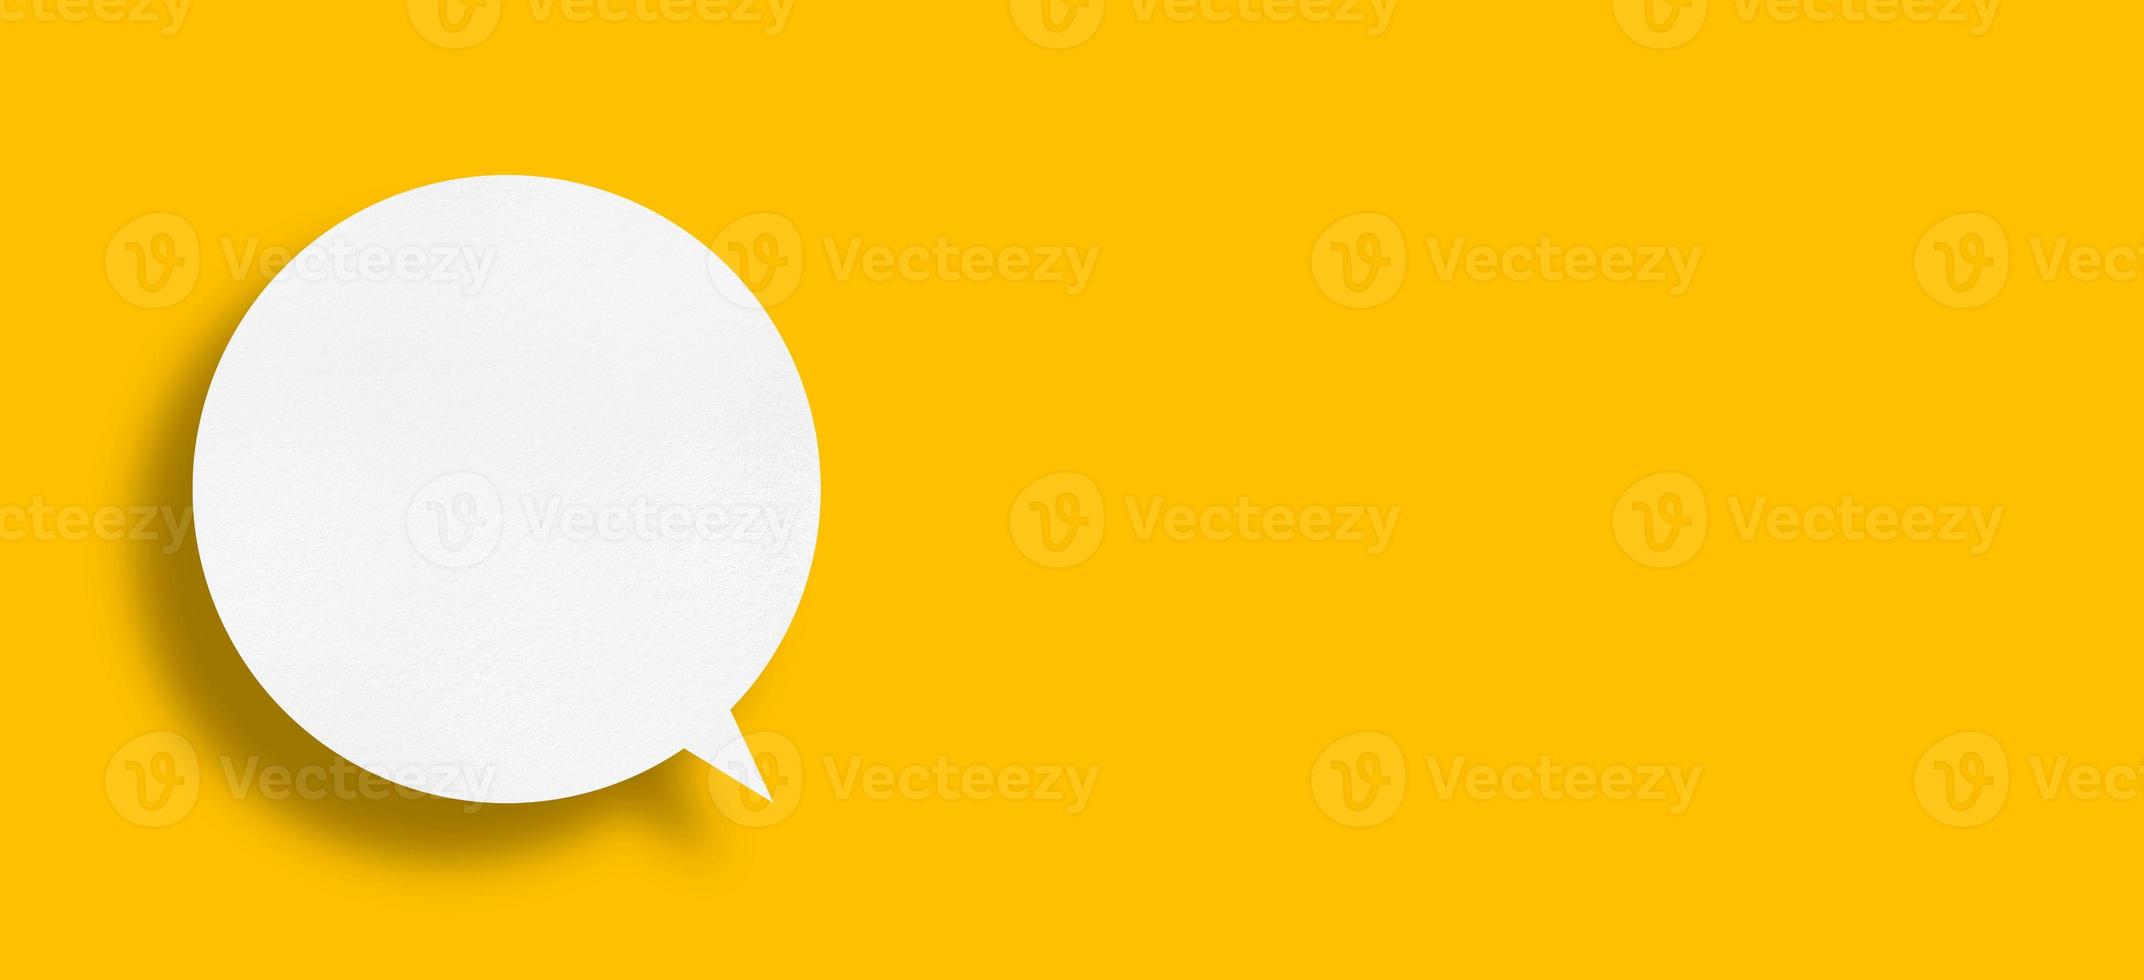 papel branco em forma de bolha do discurso contra um fundo amarelo. foto